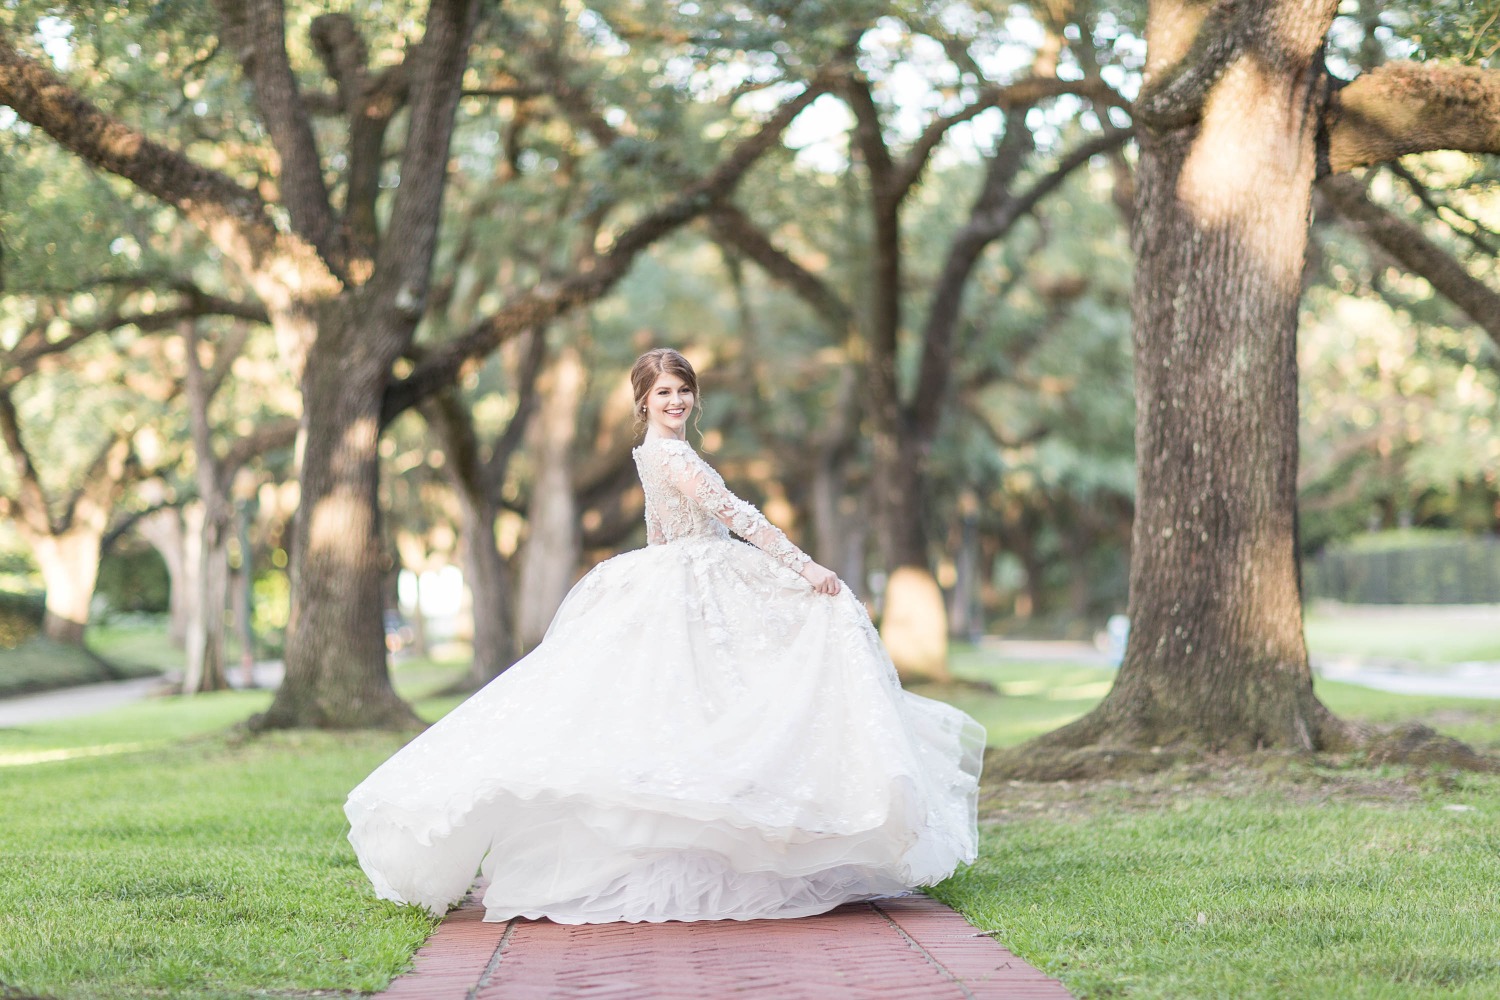 twirling in a Ysa Makino wedding dress